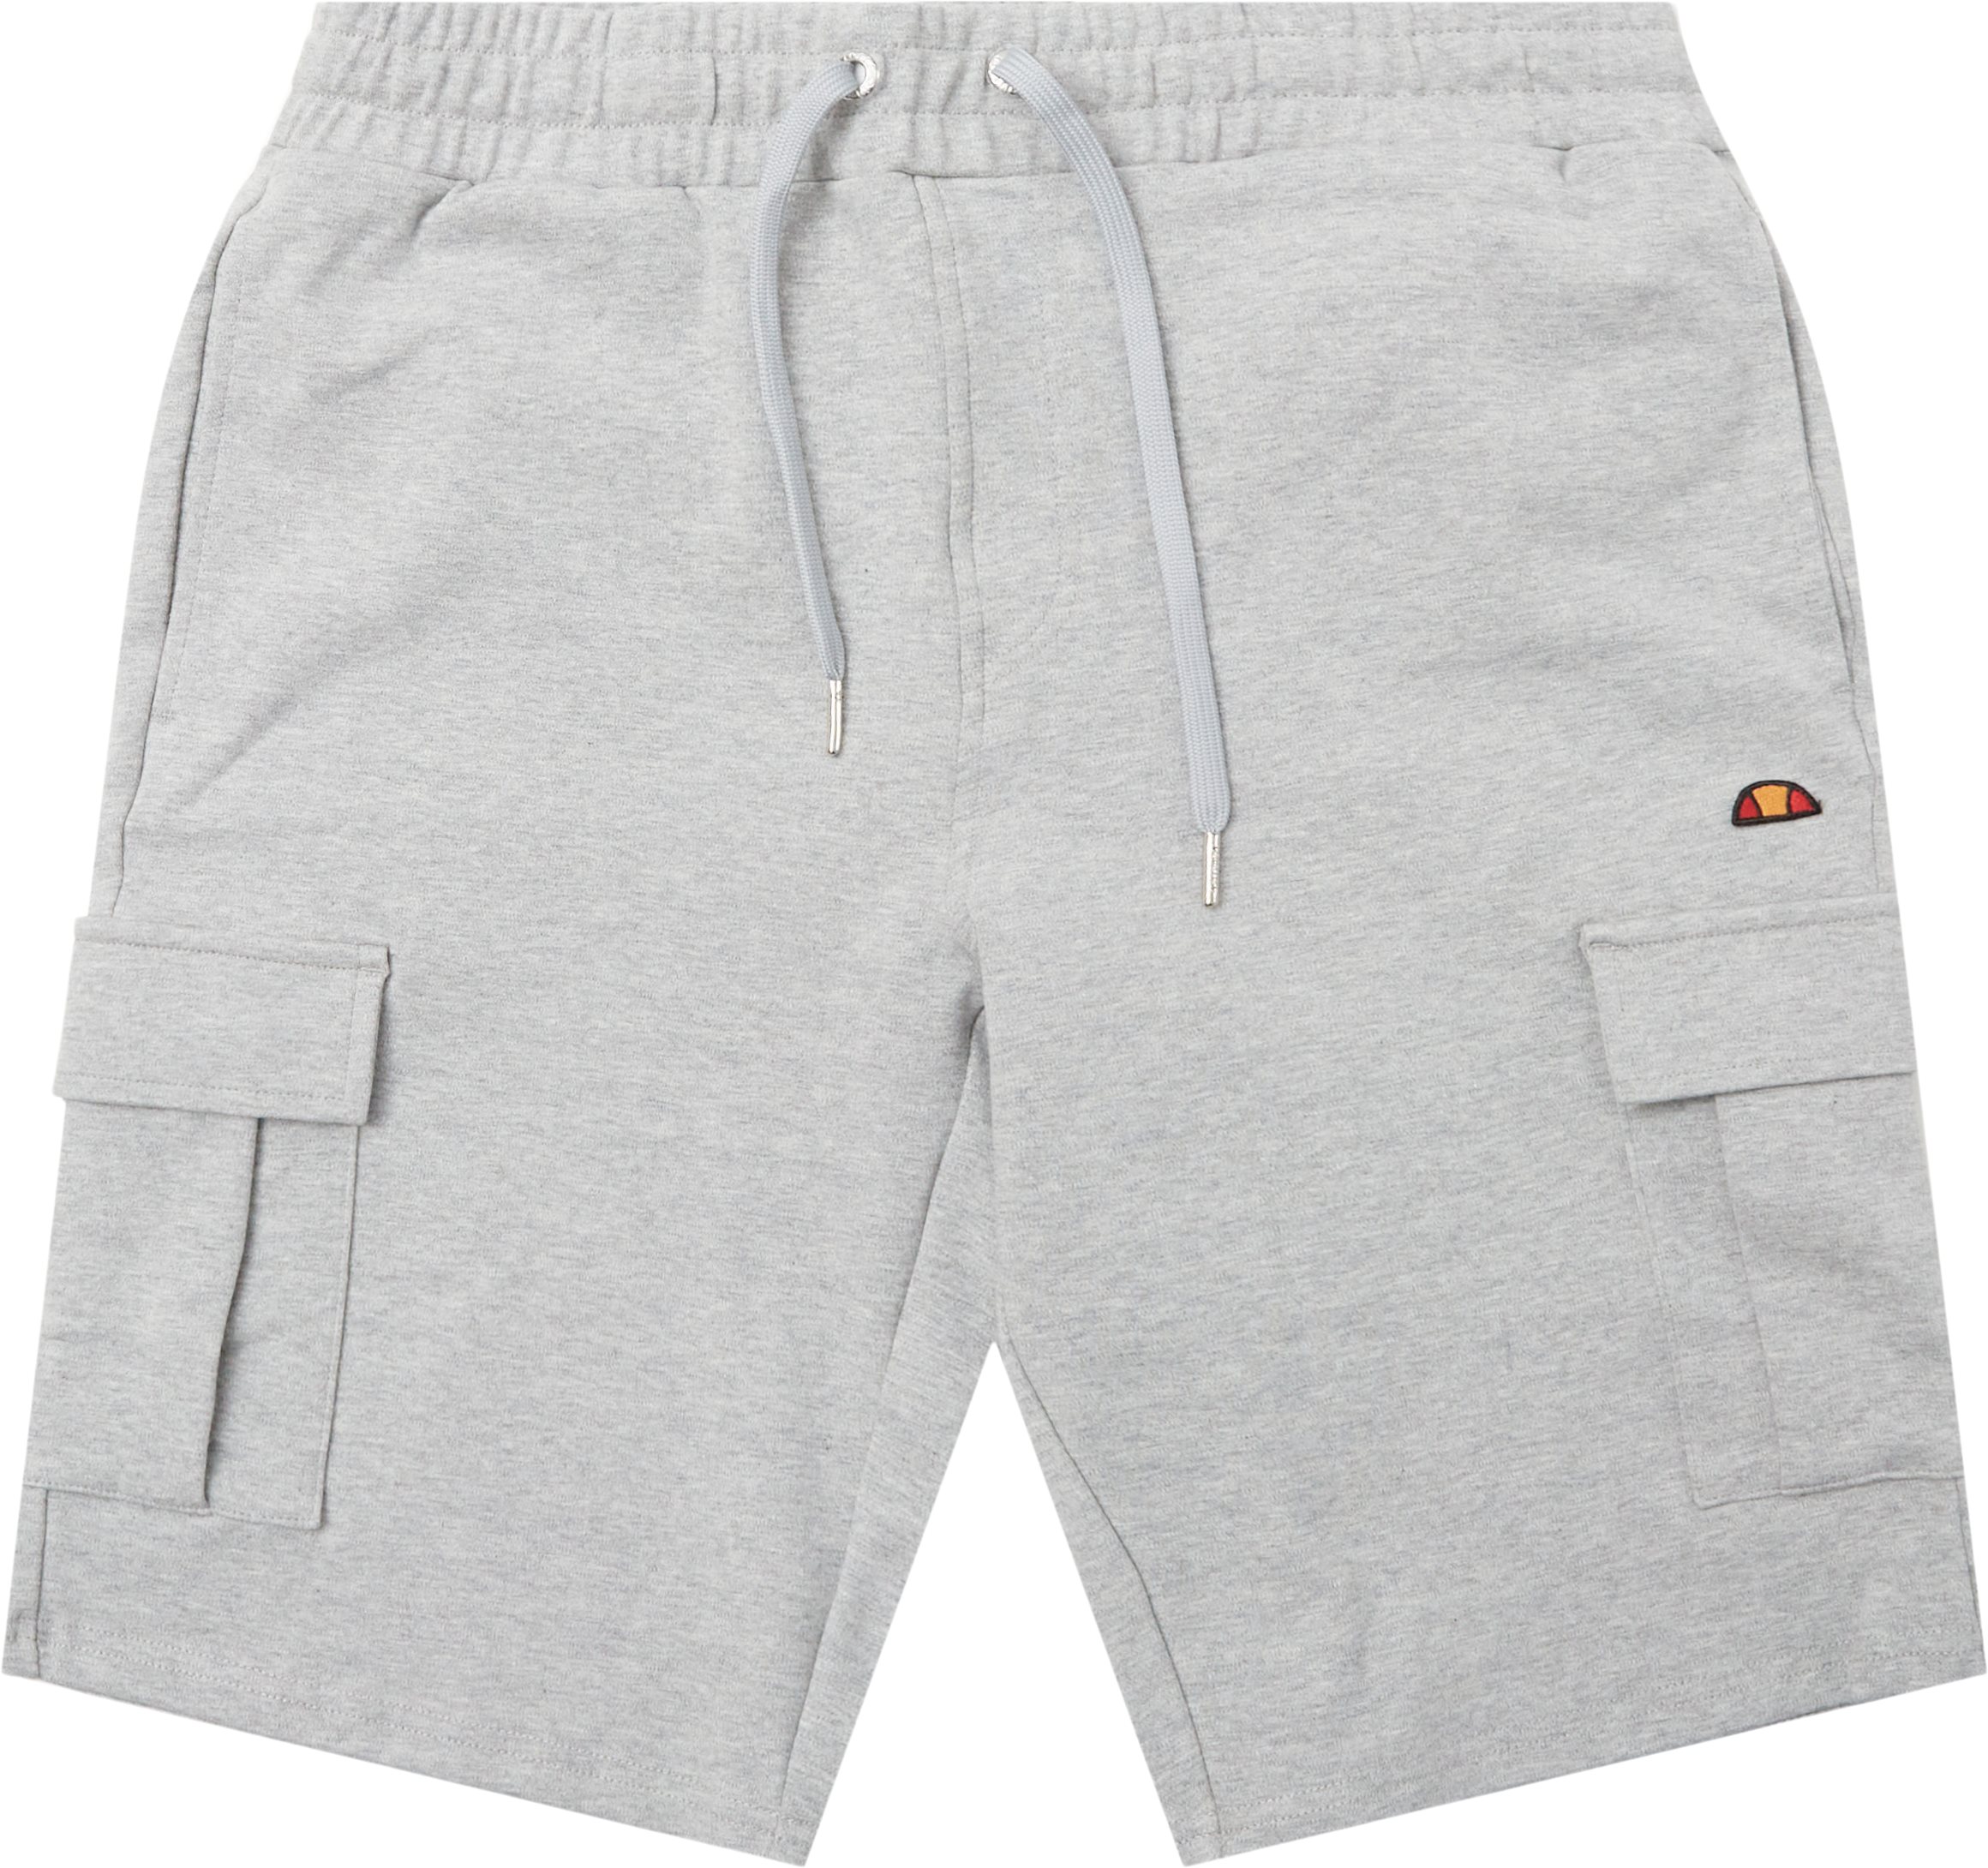 El Panason Cargo Shorts - Shorts - Regular fit - Grey